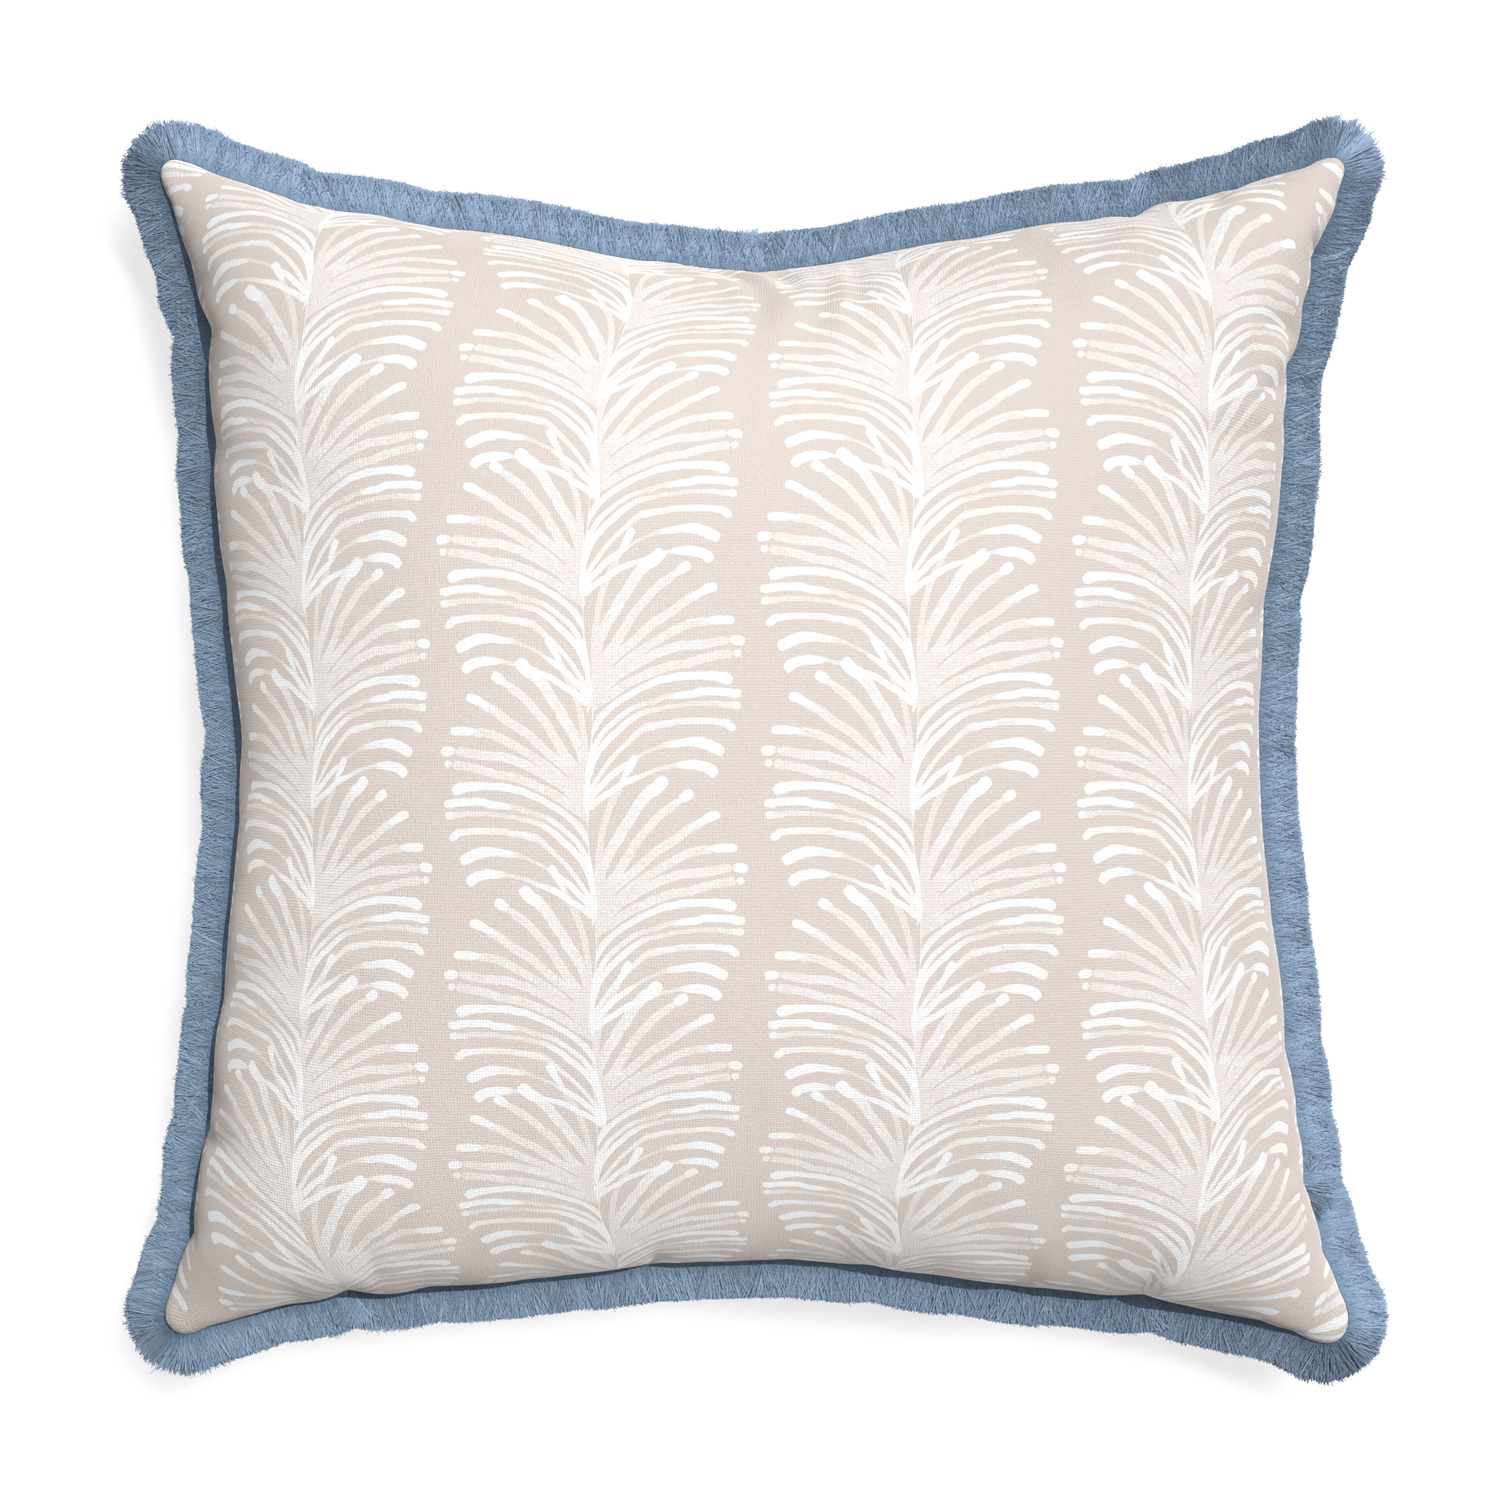 Euro-sham emma sand custom pillow with sky fringe on white background